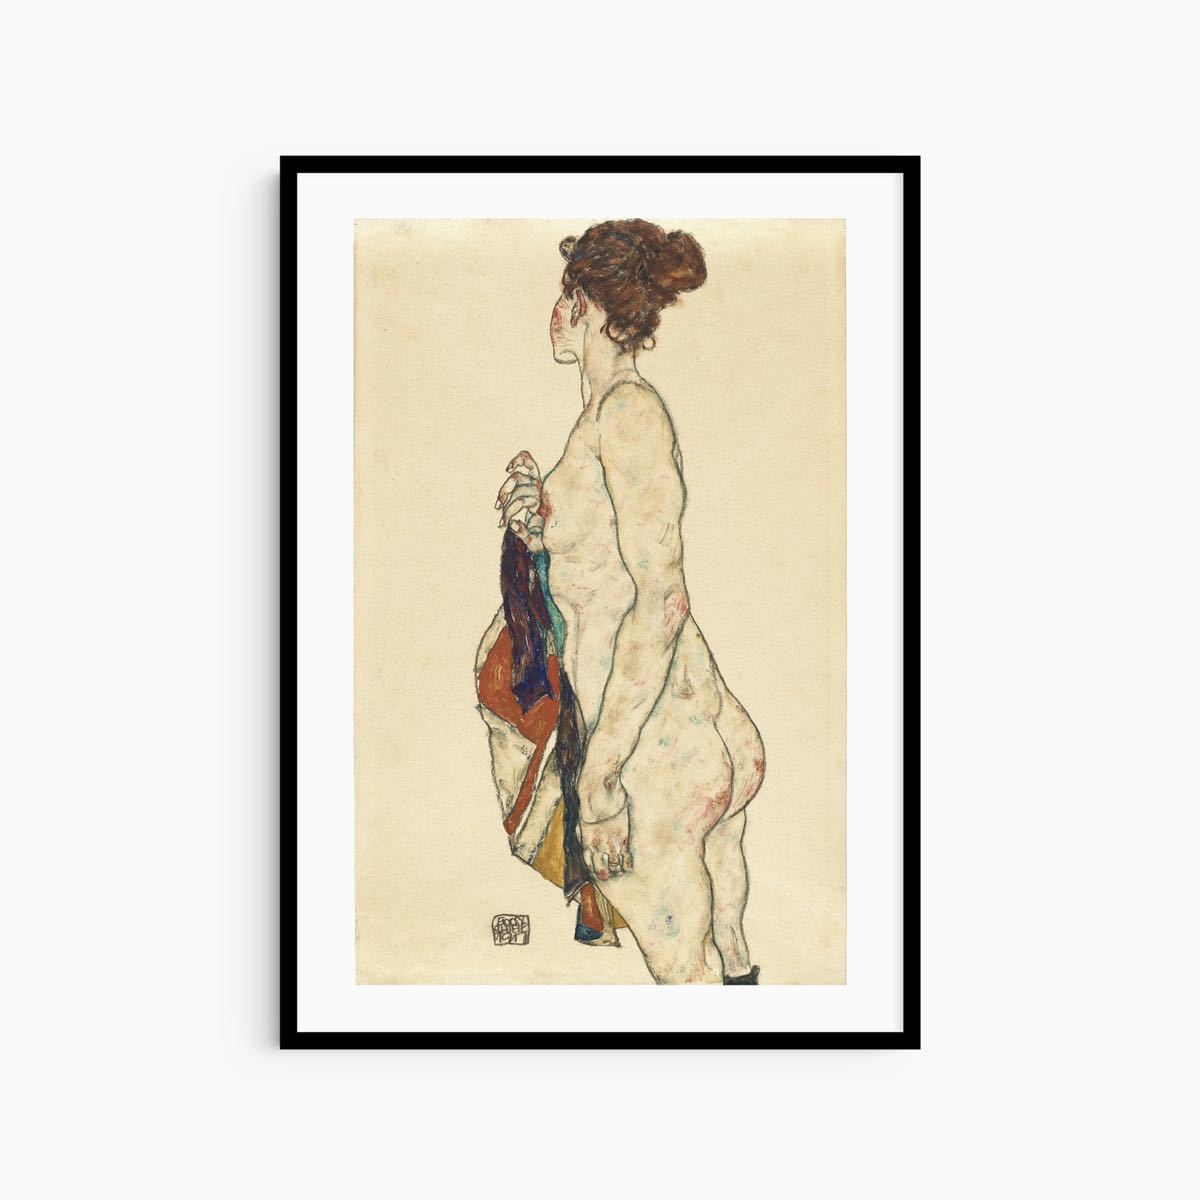 Egon Schiele 표현주의 추상 회화 미술 그림 포스터 빈티지 예술 현대 미술 포스터 현대 미술 인테리어, 인쇄물, 포스터, 다른 사람